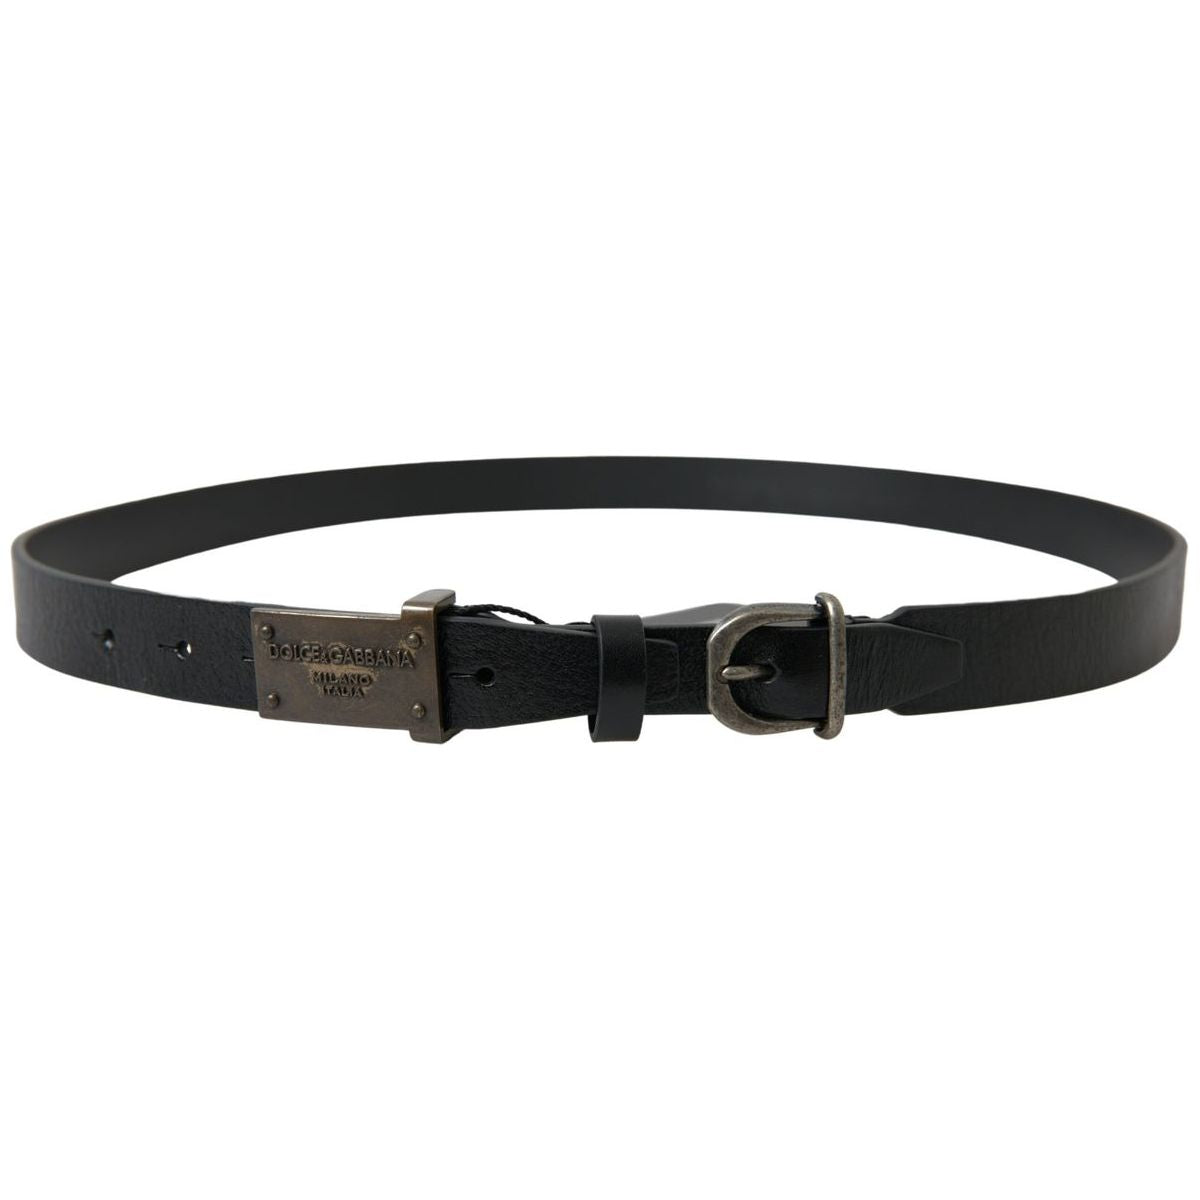 Dolce & Gabbana Elegant Black Leather Belt - Metal Buckle Closure black-leather-antique-logo-buckle-belt